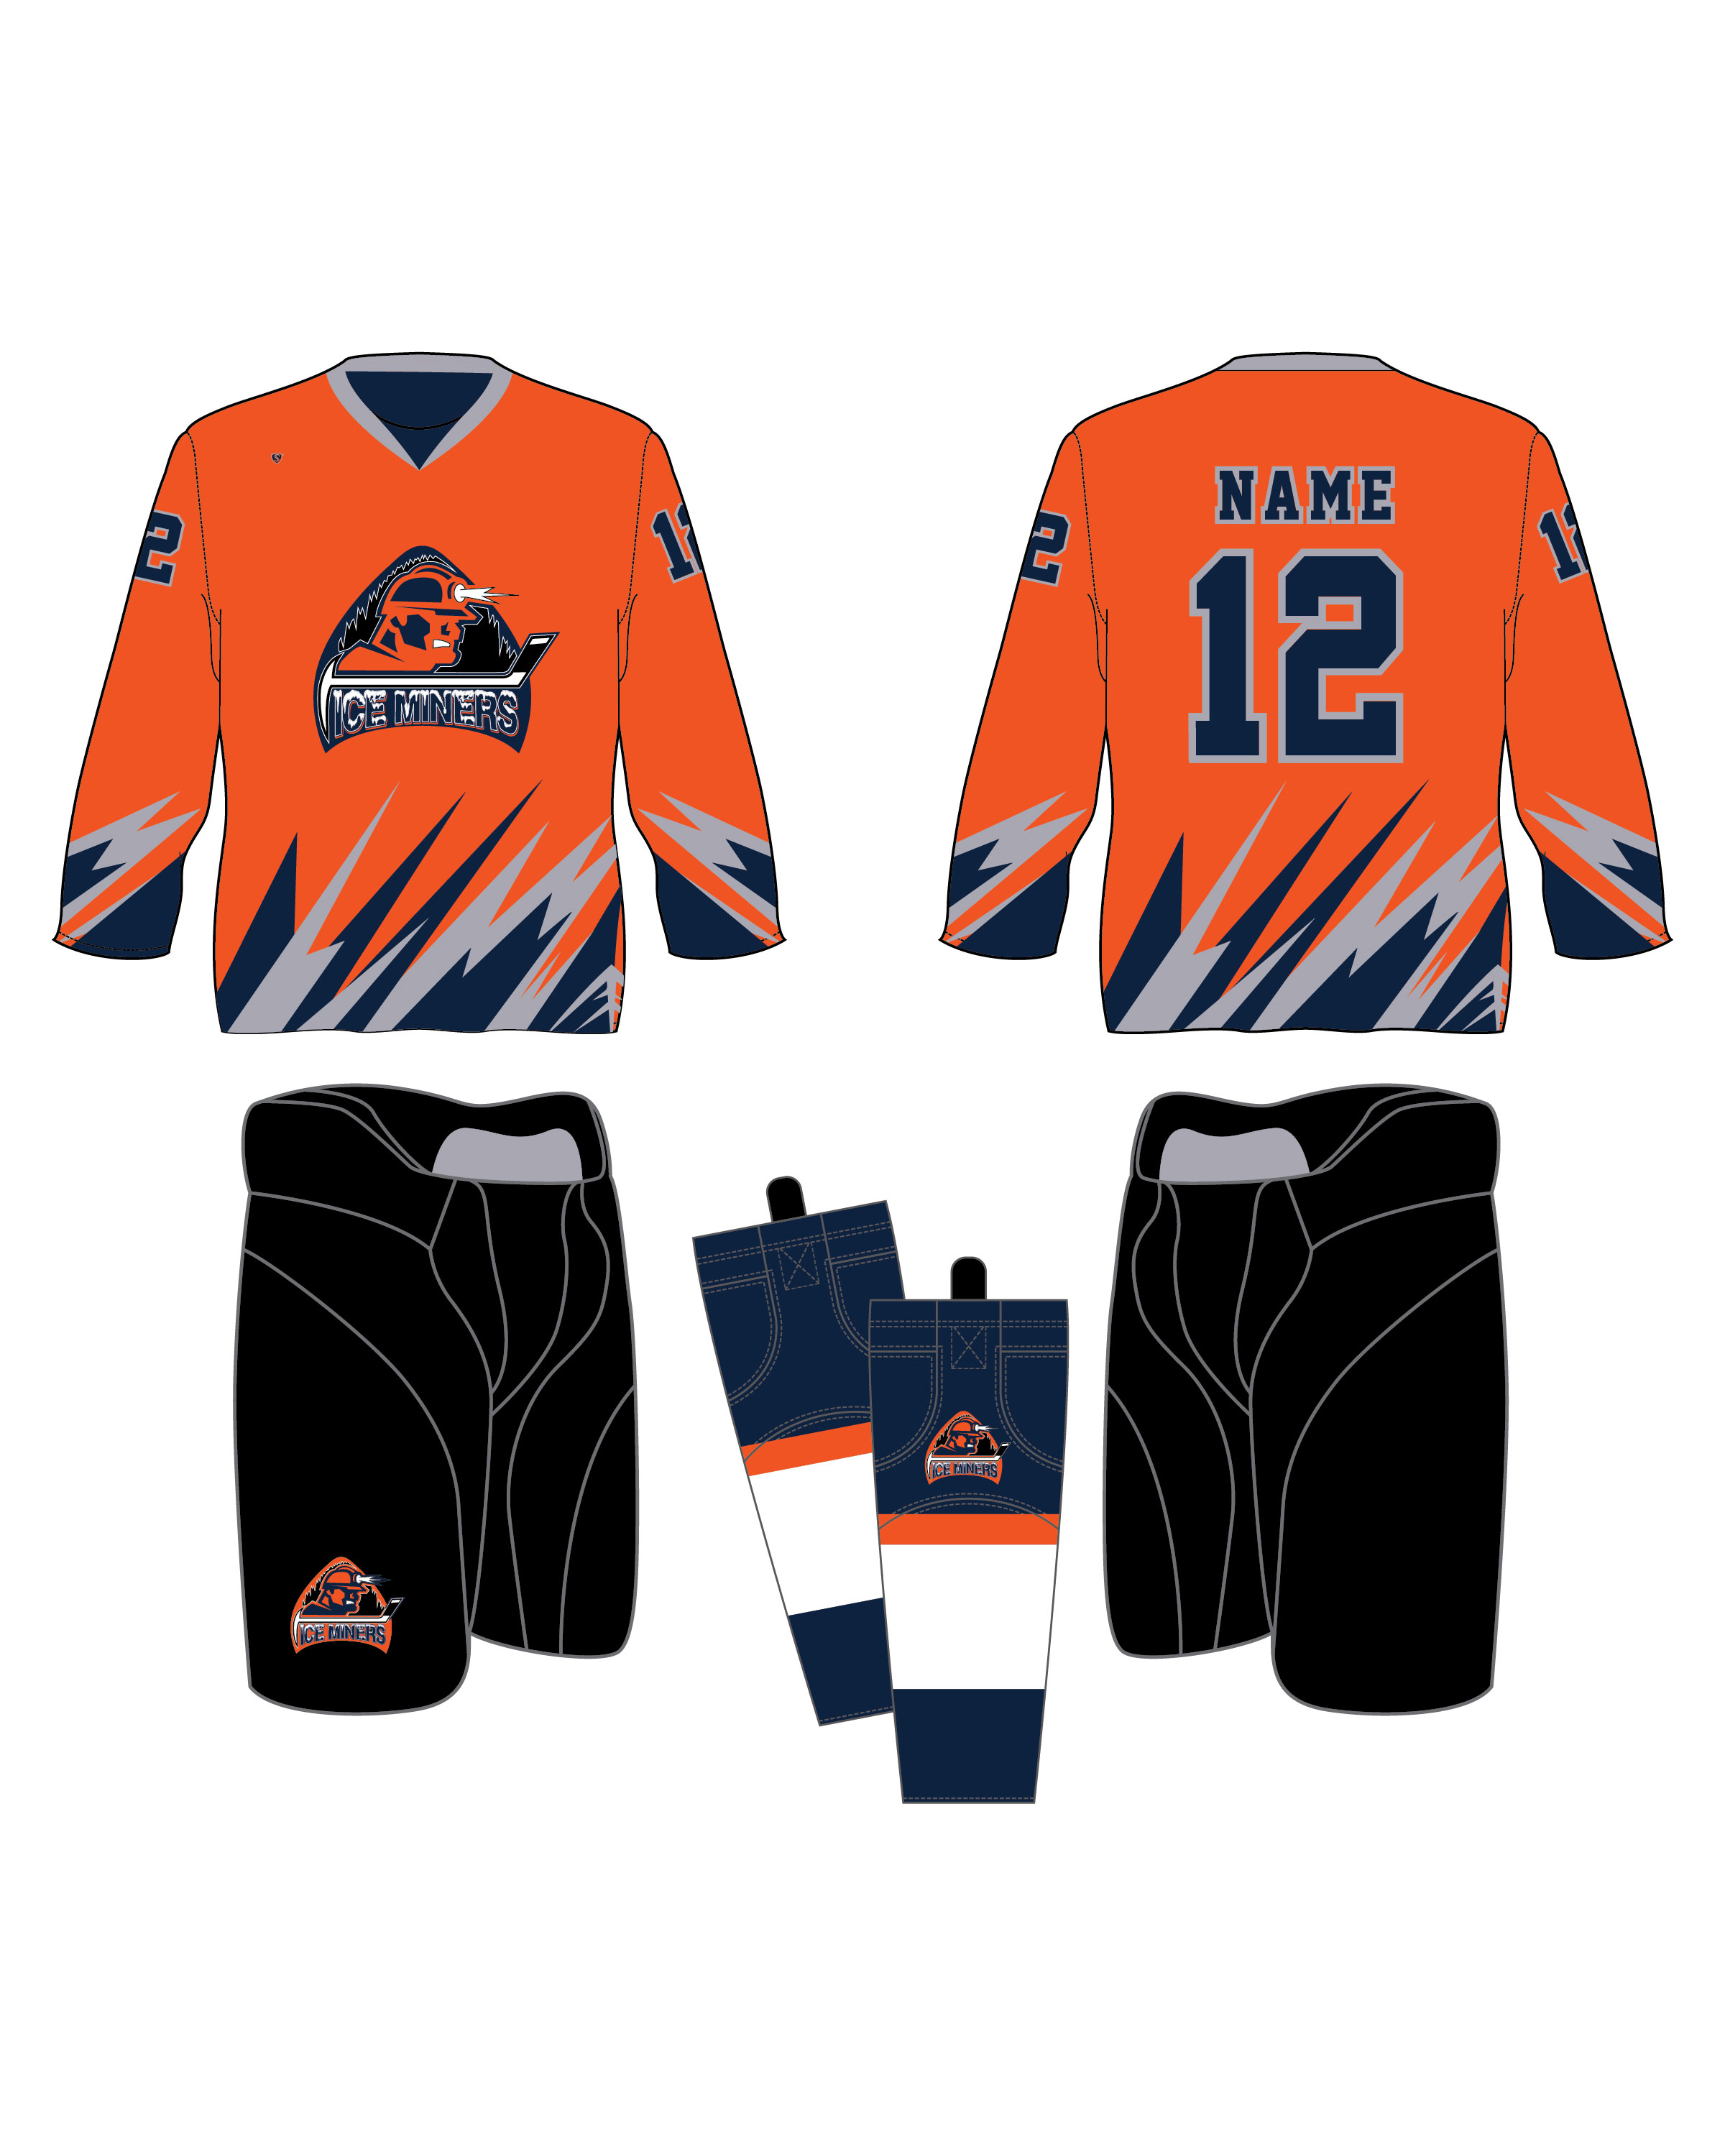 Custom Sublimated Hockey Uniform - Ice Miners 1 